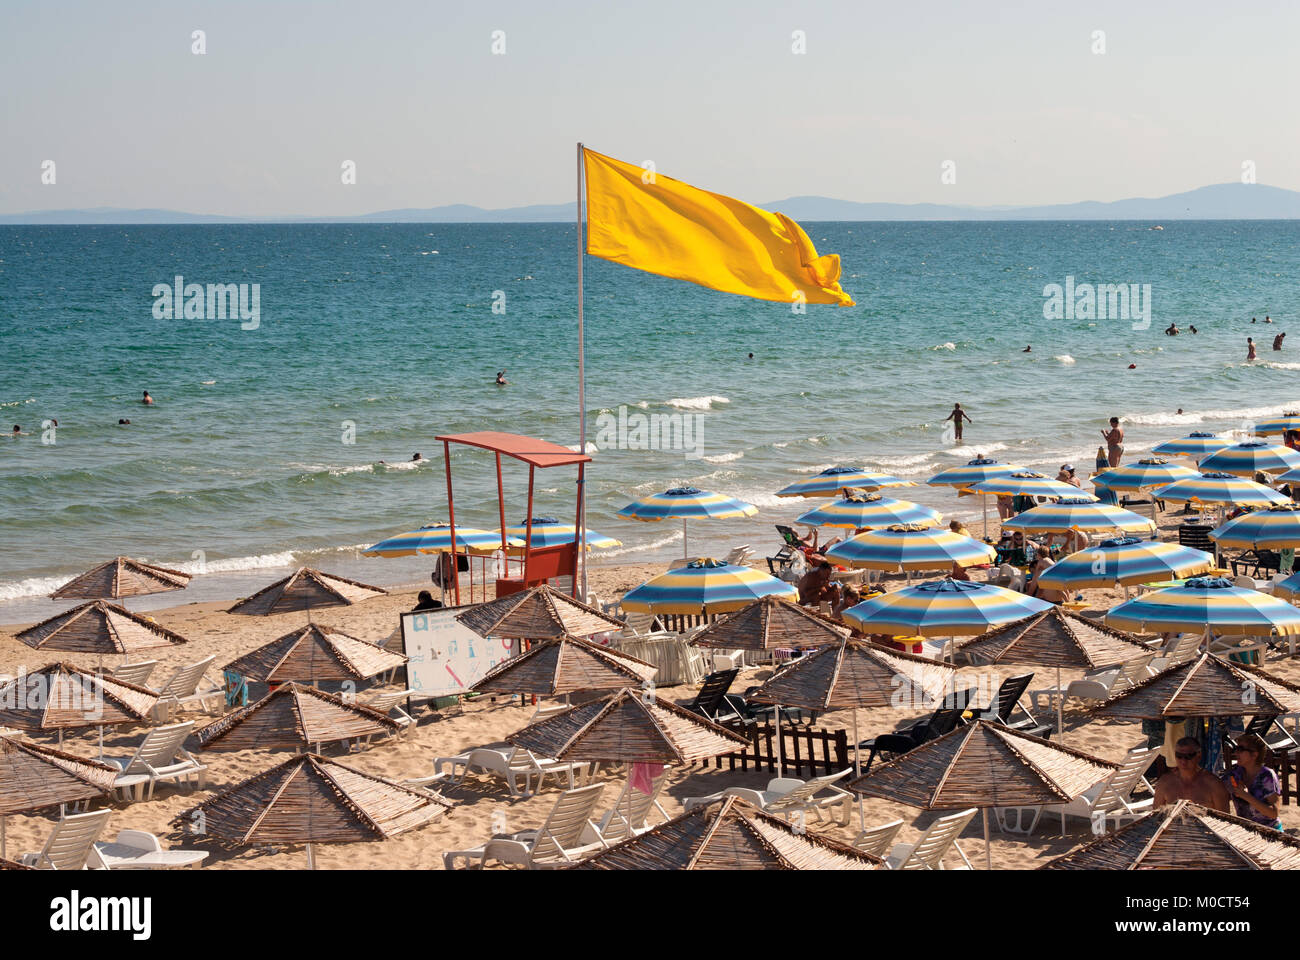 Bandiera gialla al mare spiaggia indica pericolo di nuoto. Città di Nessebar, Bulgaria Foto Stock